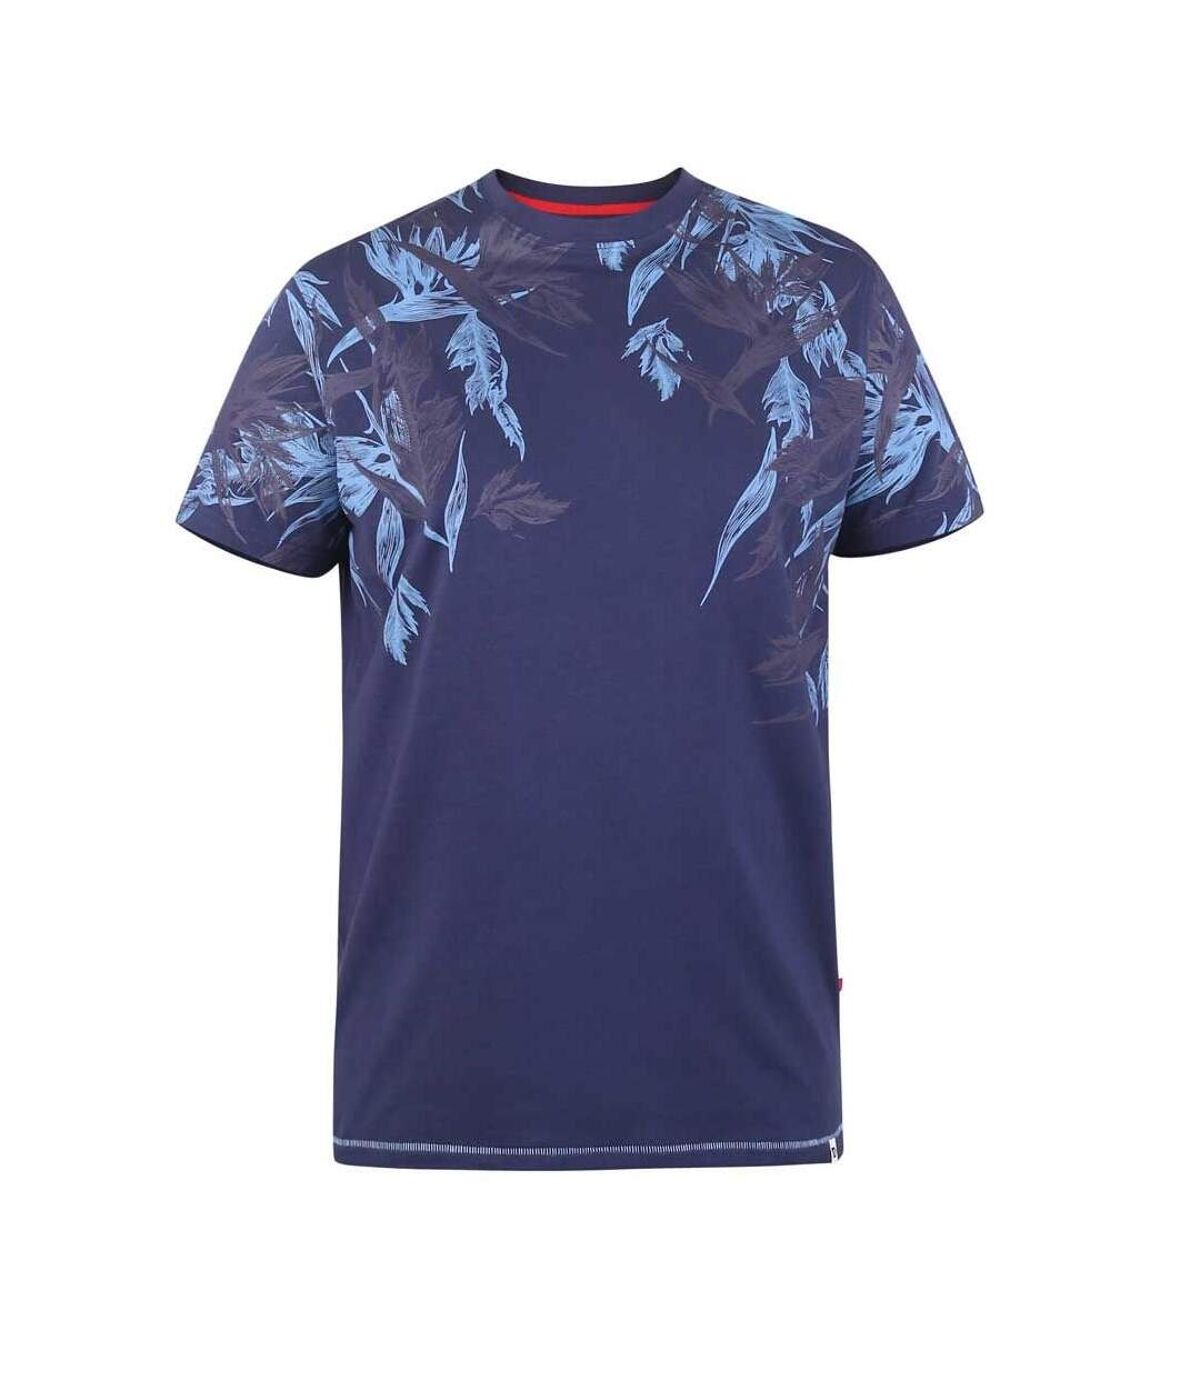 Duke - T-shirt BROMLEY D555 - Homme (Bleu marine) - UTDC345